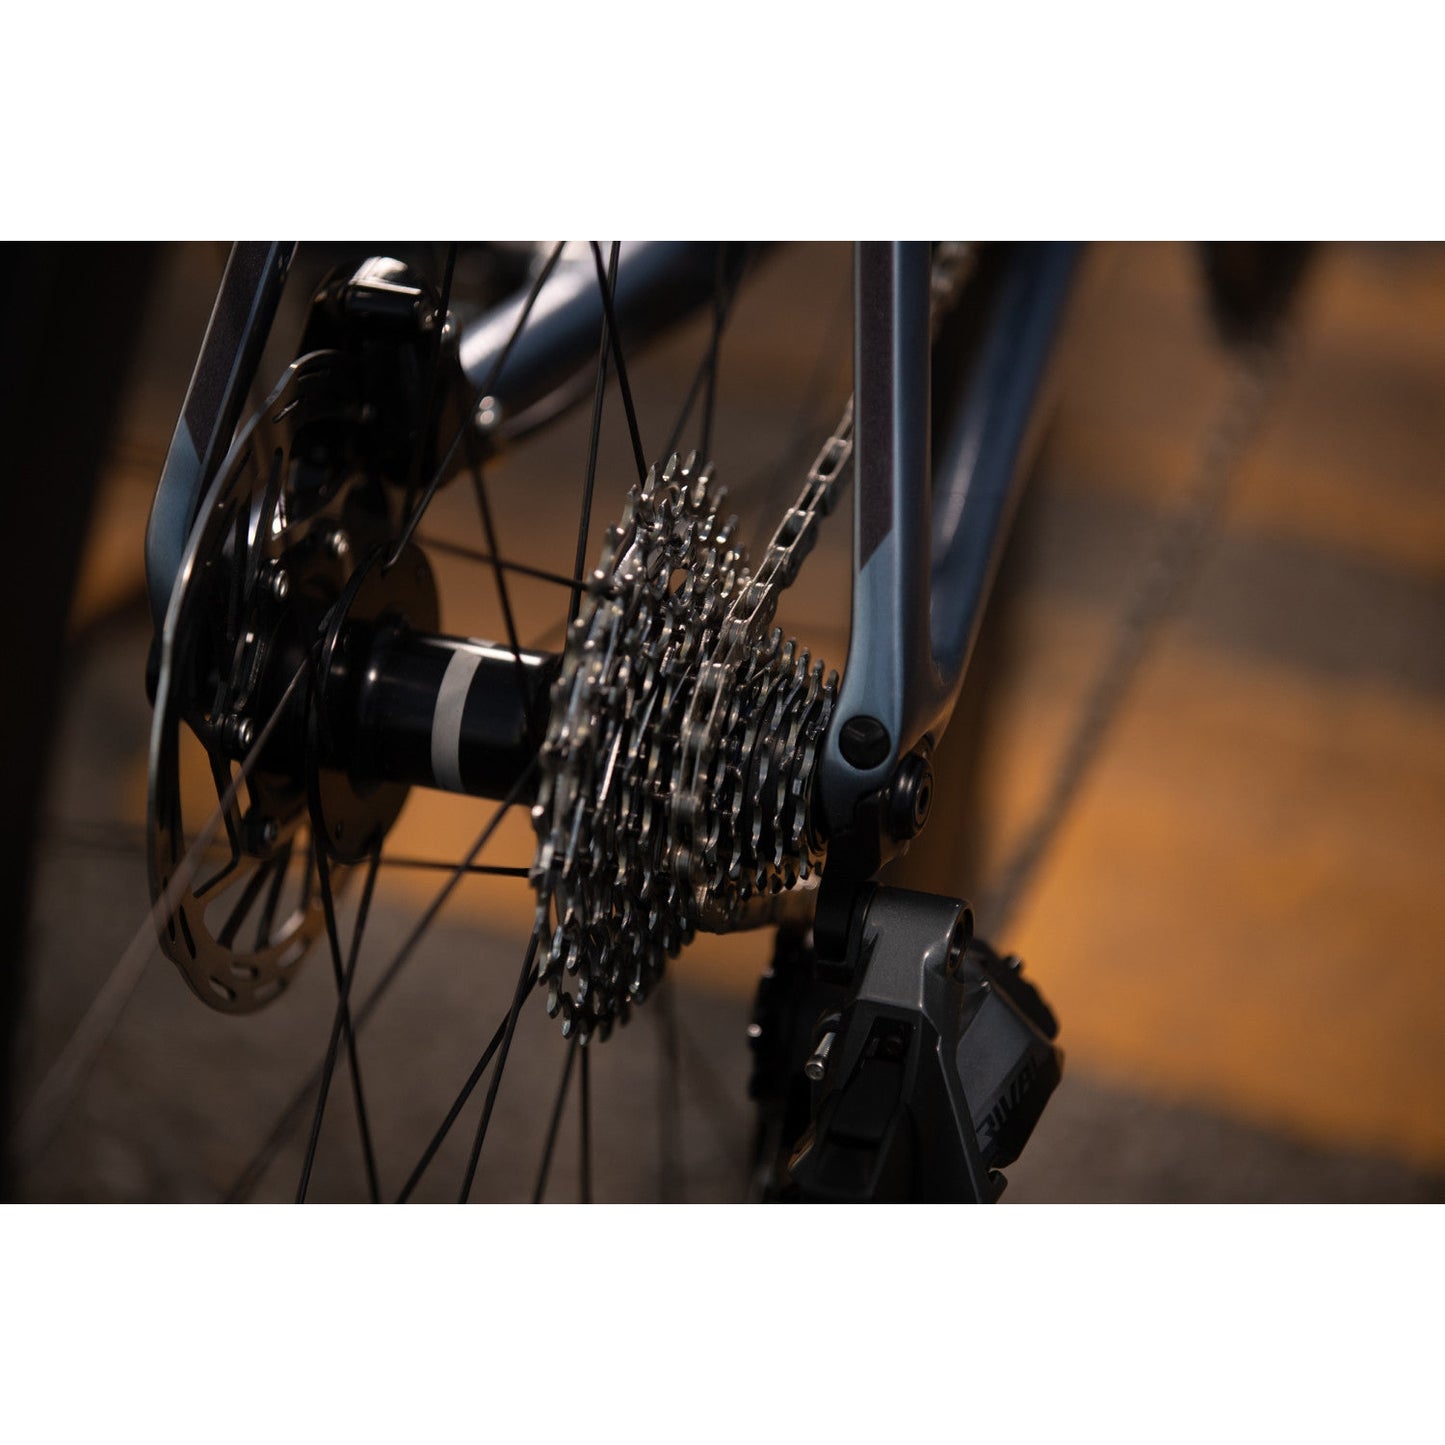 Giant Propel Advanced 1 Disc Road Bike - Bikes - Bicycle Warehouse